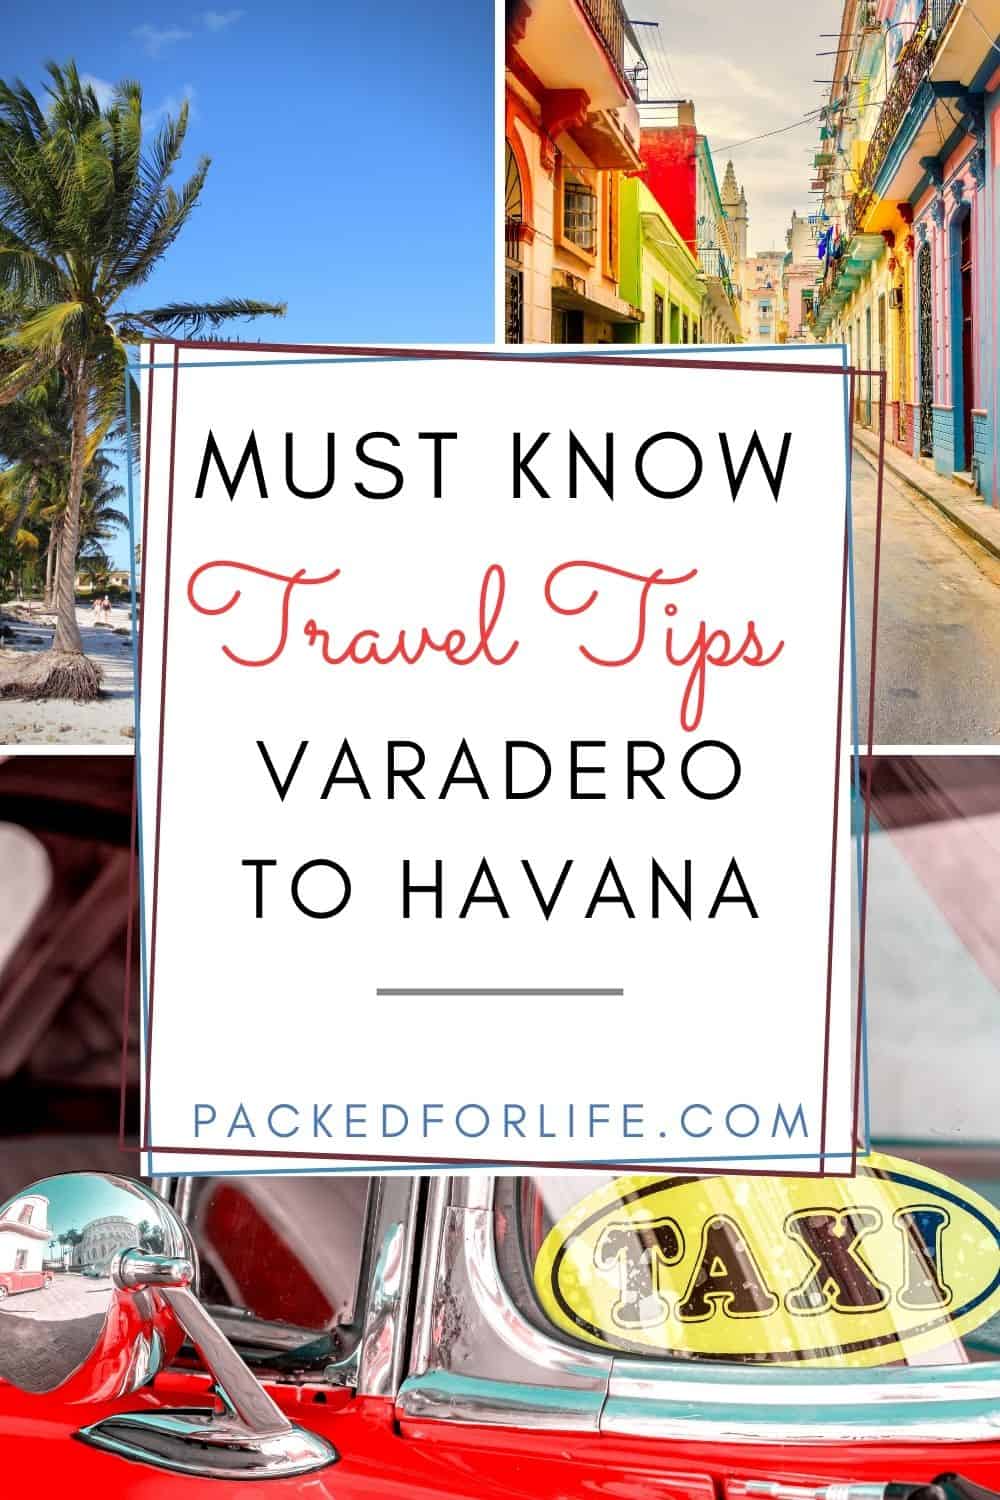 tours to havana from varadero